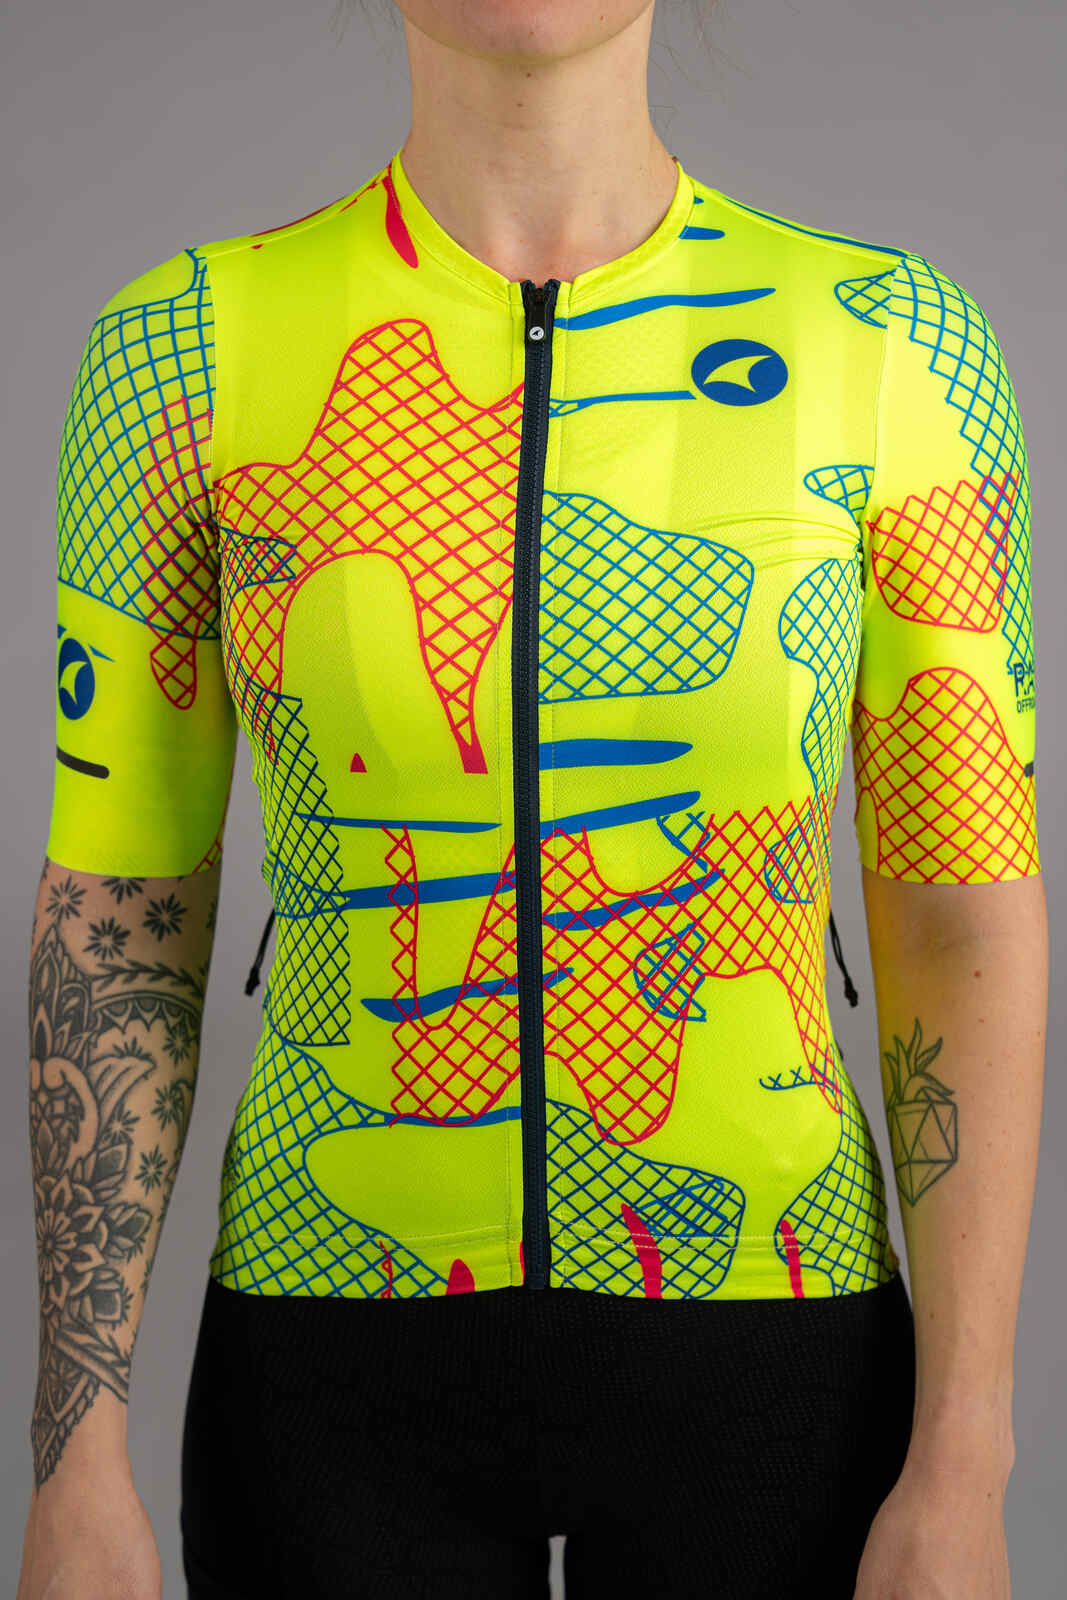 Women's High-Viz Yellow Gravel Cycling Jersey - Zipper Close-Up